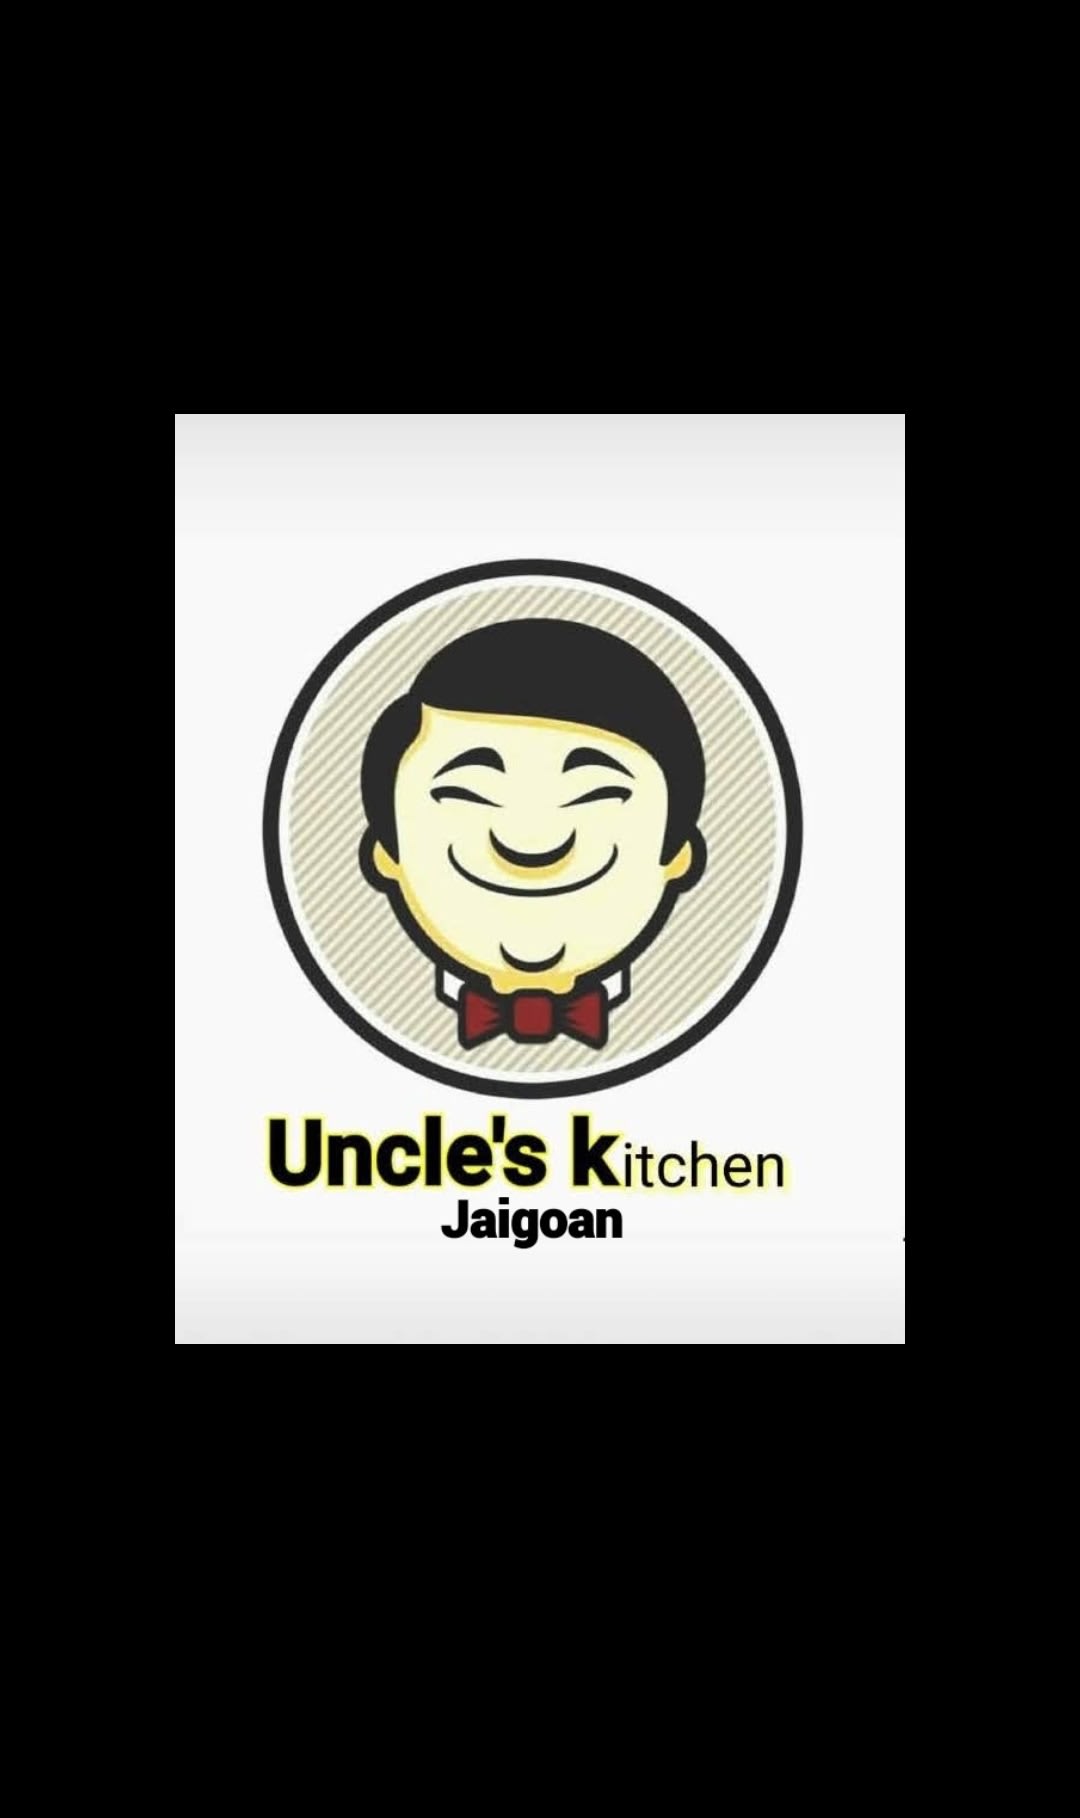 Uncle's kitchen